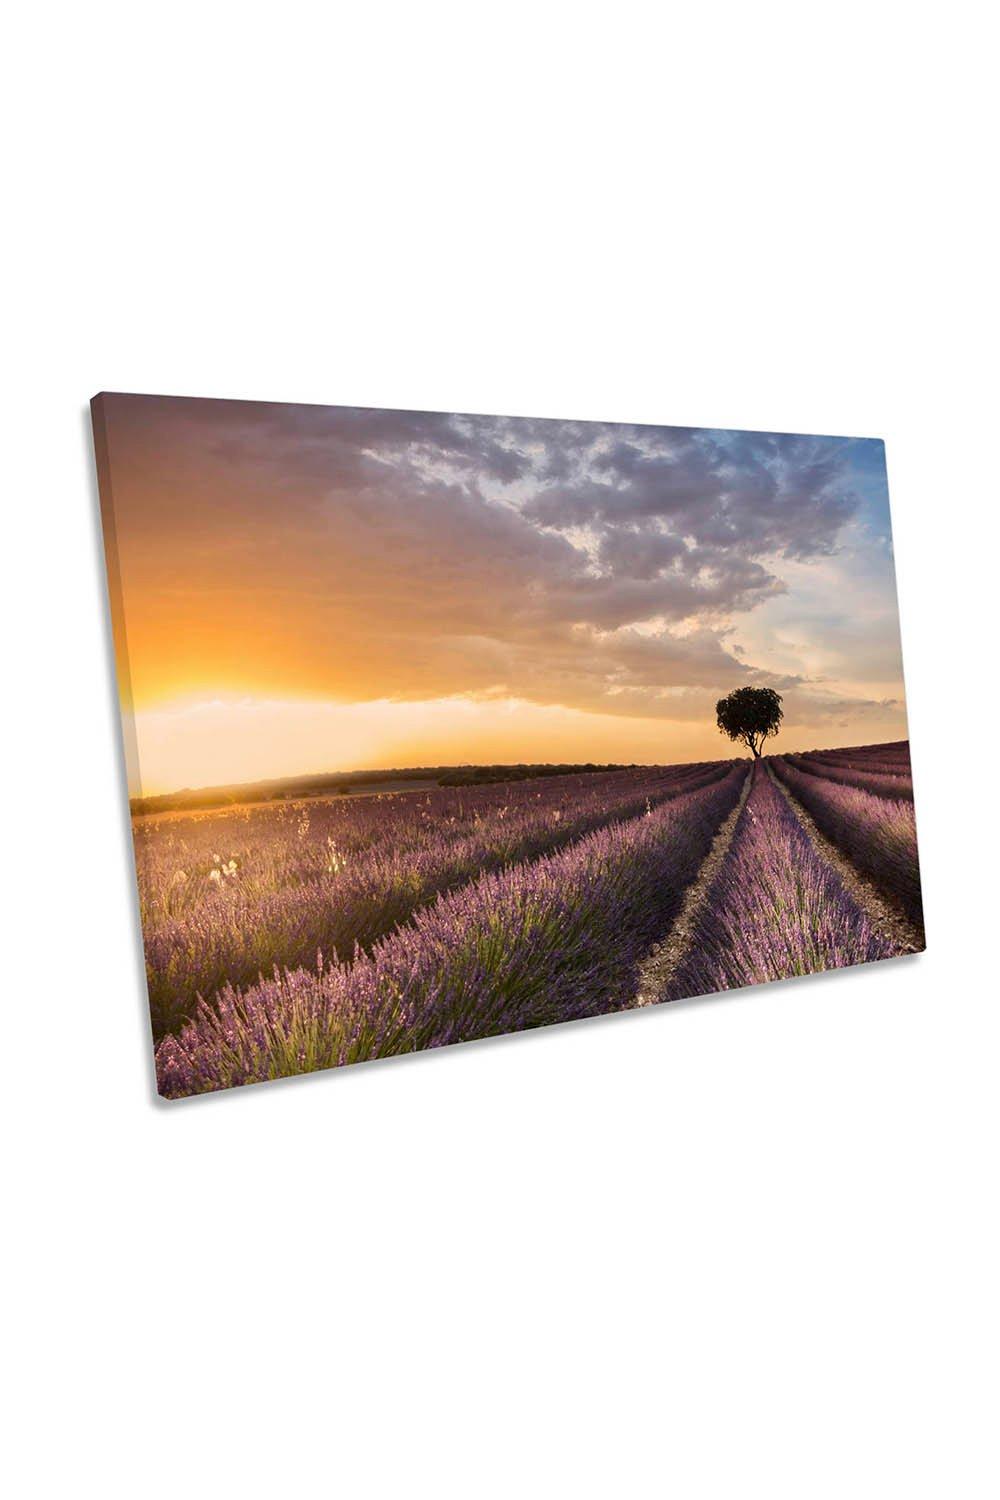 Destination Lavender Floral Sunset Canvas Wall Art Picture Print